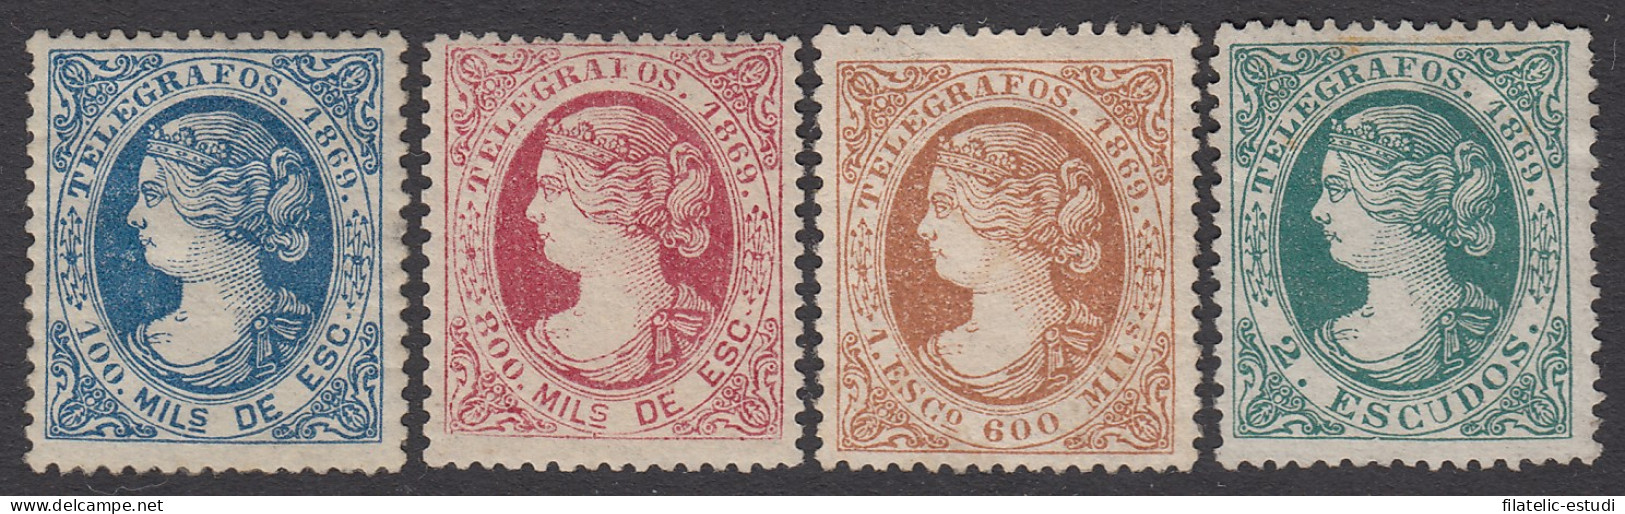 España Spain Telégrafos 26/29 1869 Isabel II  MH - Fiscaux-postaux